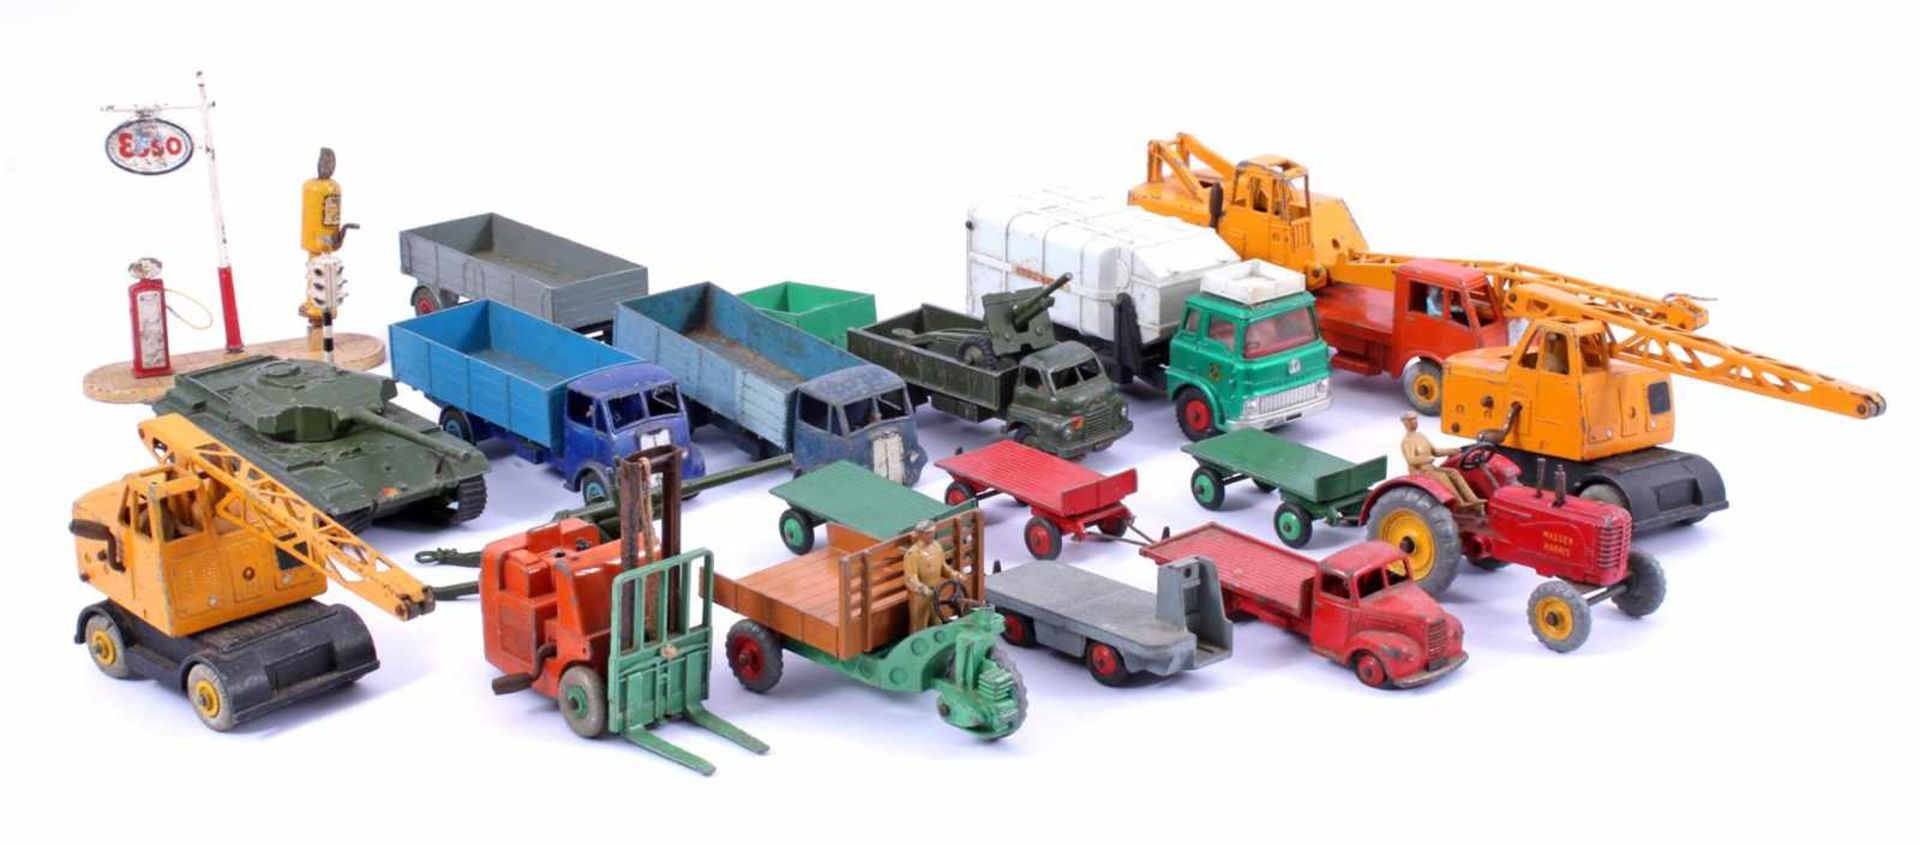 Verzameling van diverse Dinky Toys voertuigen waaronder legervoertuigen, vrachtwagens,